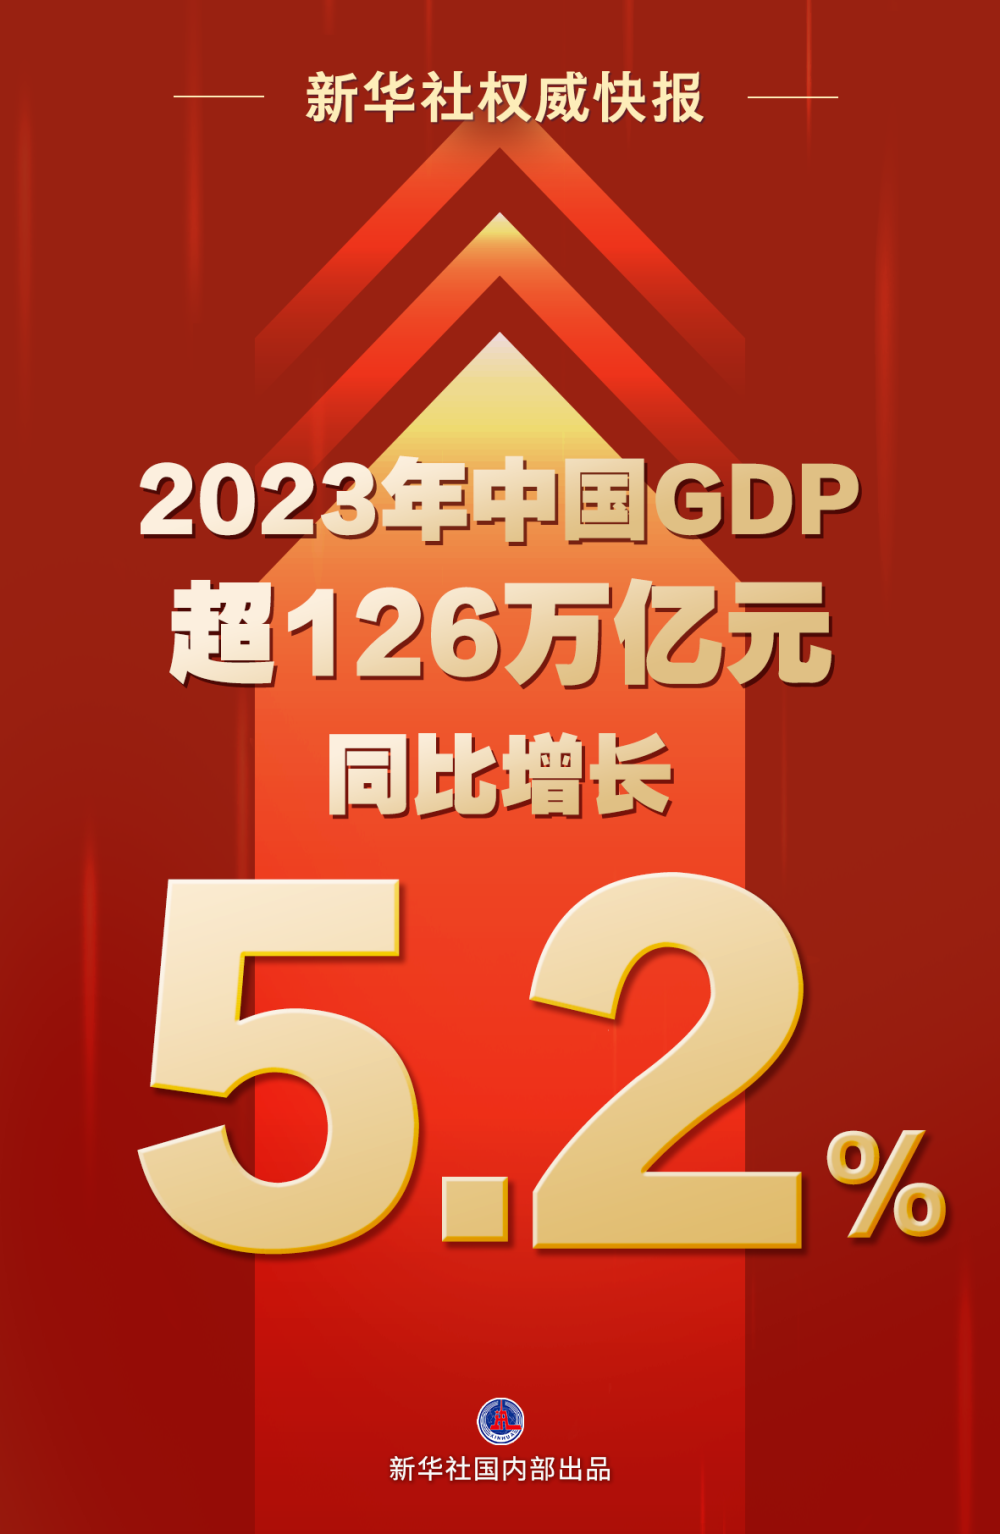 2023年中国GDP超126万亿元，同比增长5.2%